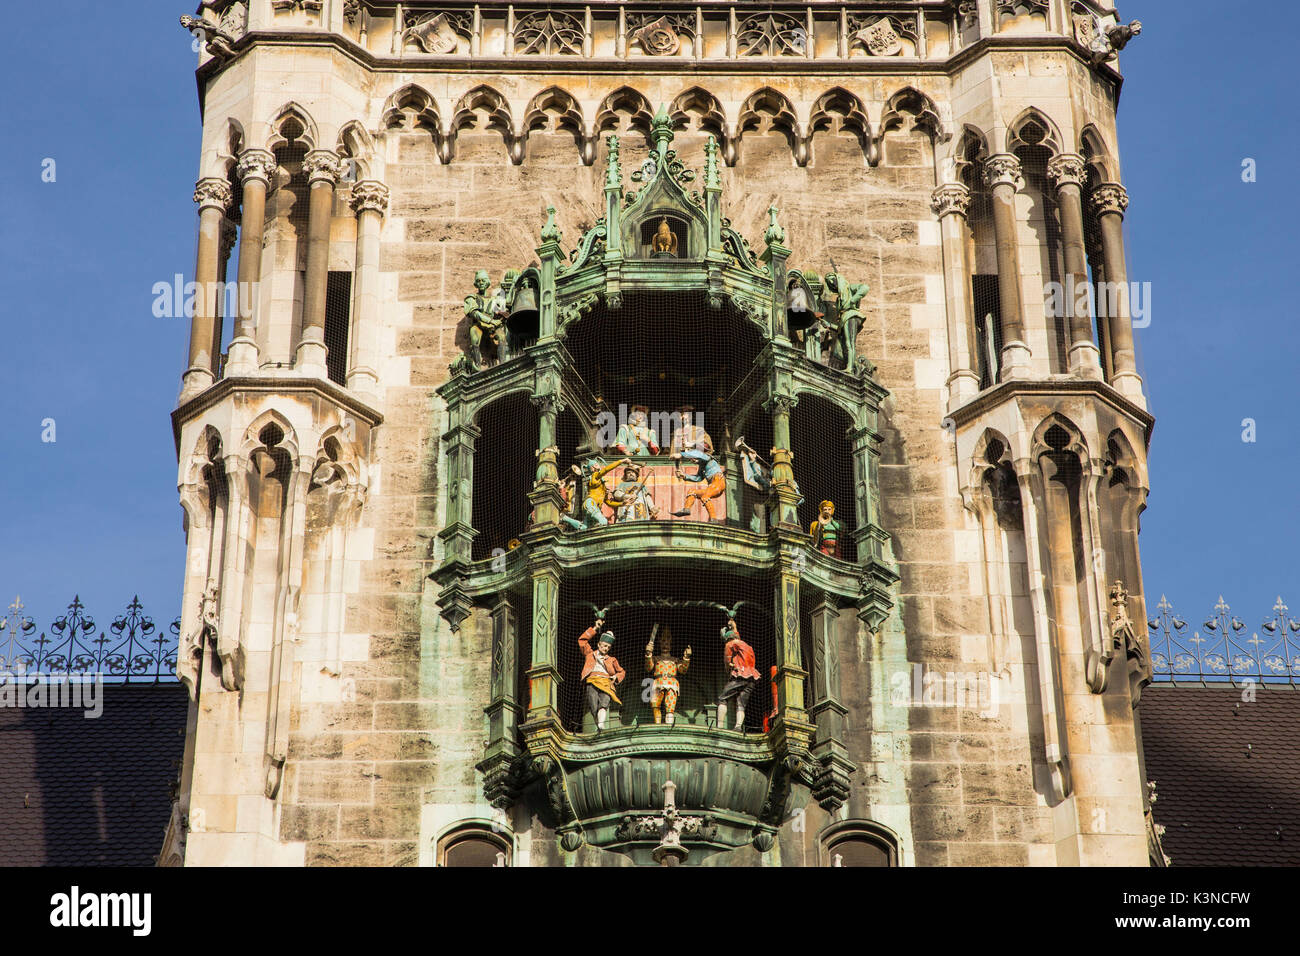 Europe, Germany, Munich. Carillon at Munich townhall in Marienplatz Stock  Photo - Alamy